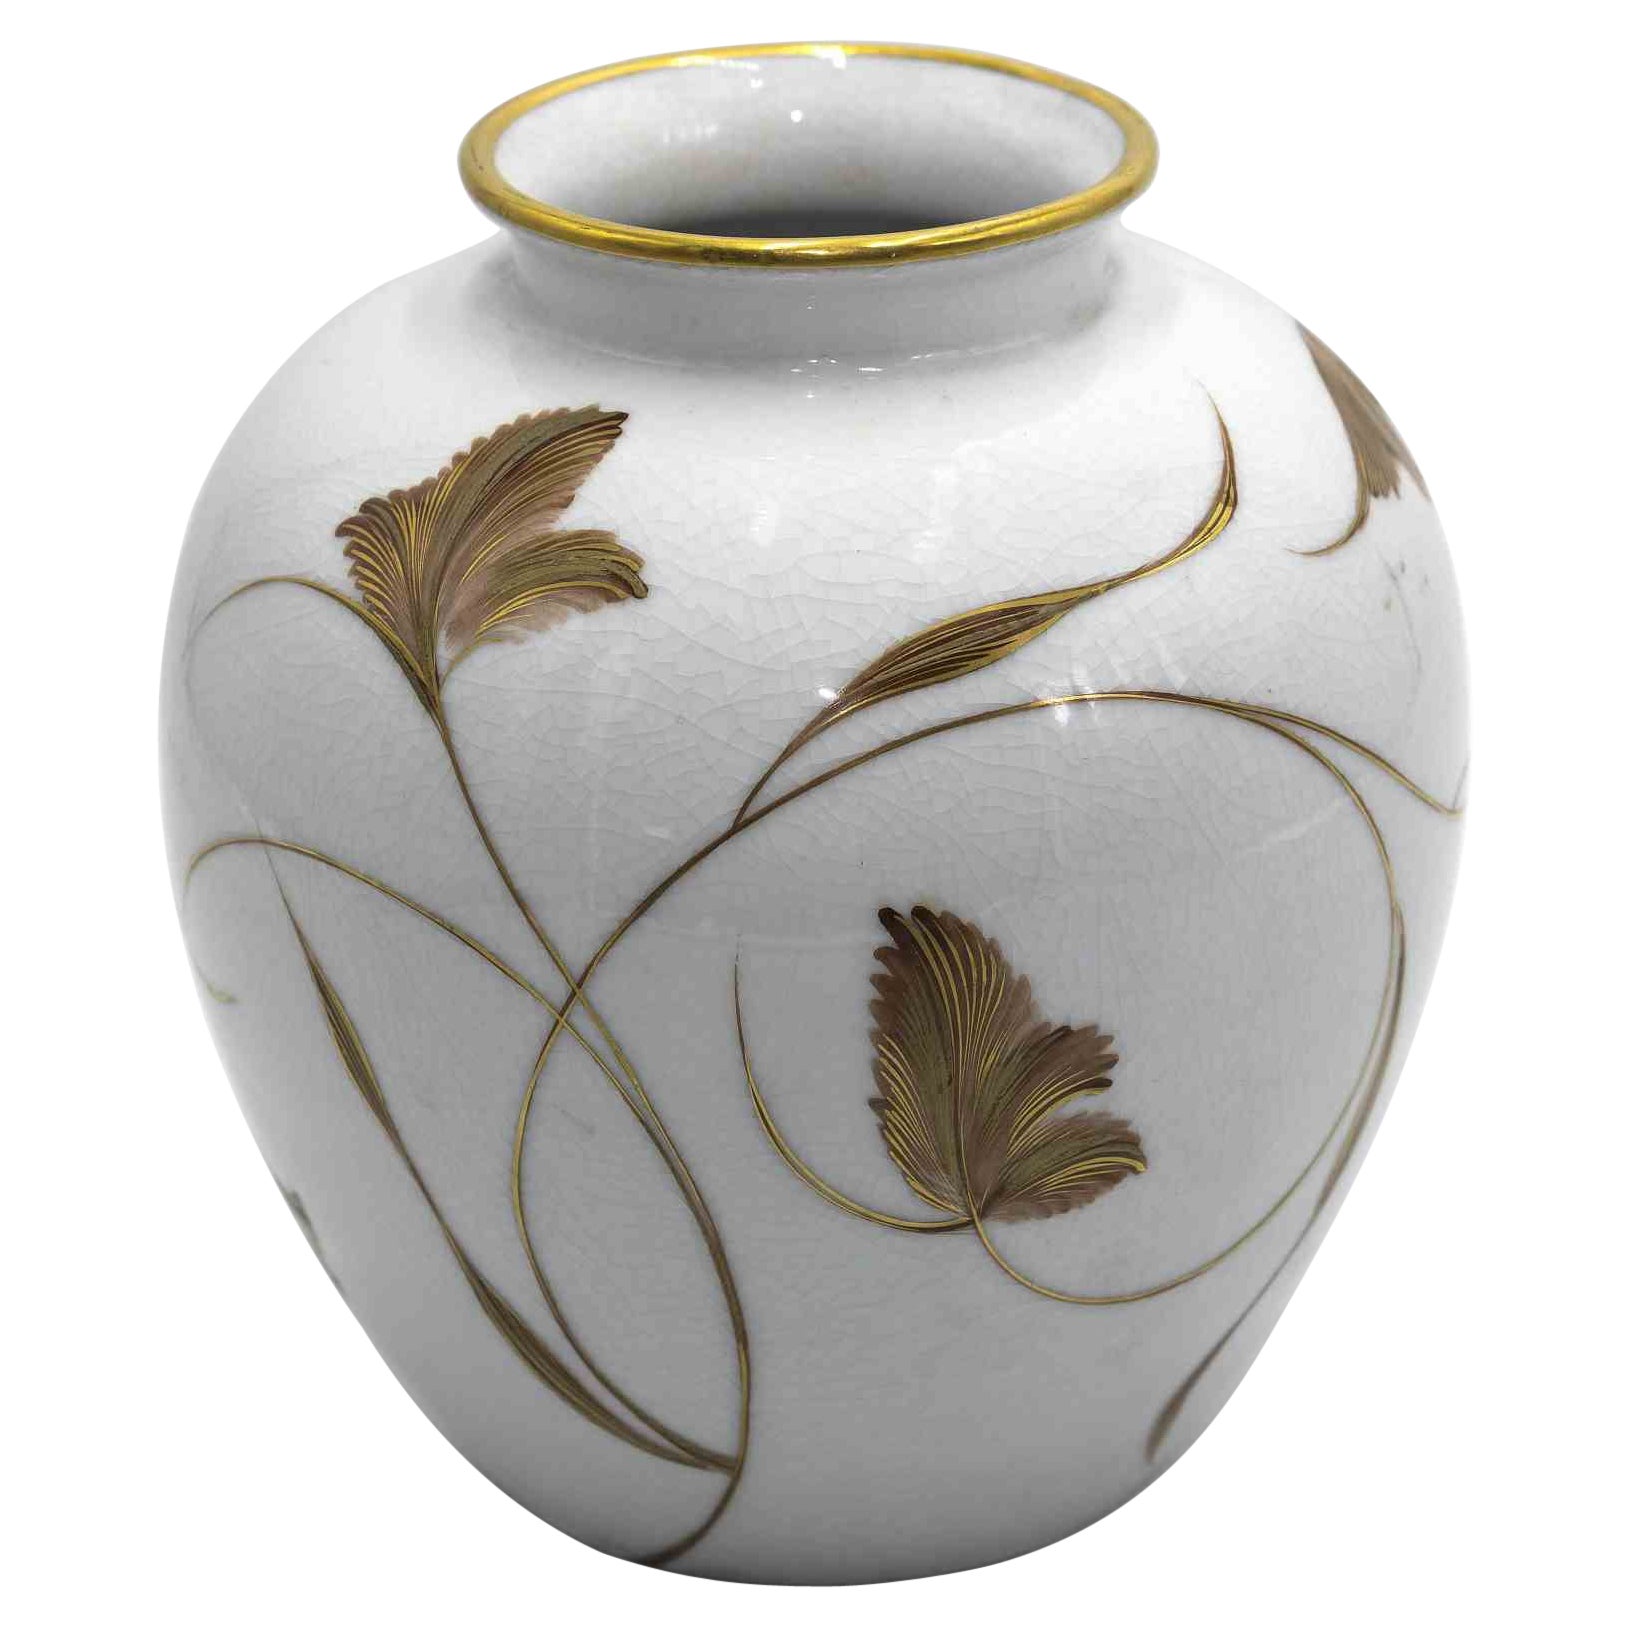 Vintage Rosenthal Gilded Porcelain Vase, Half of 20th Century